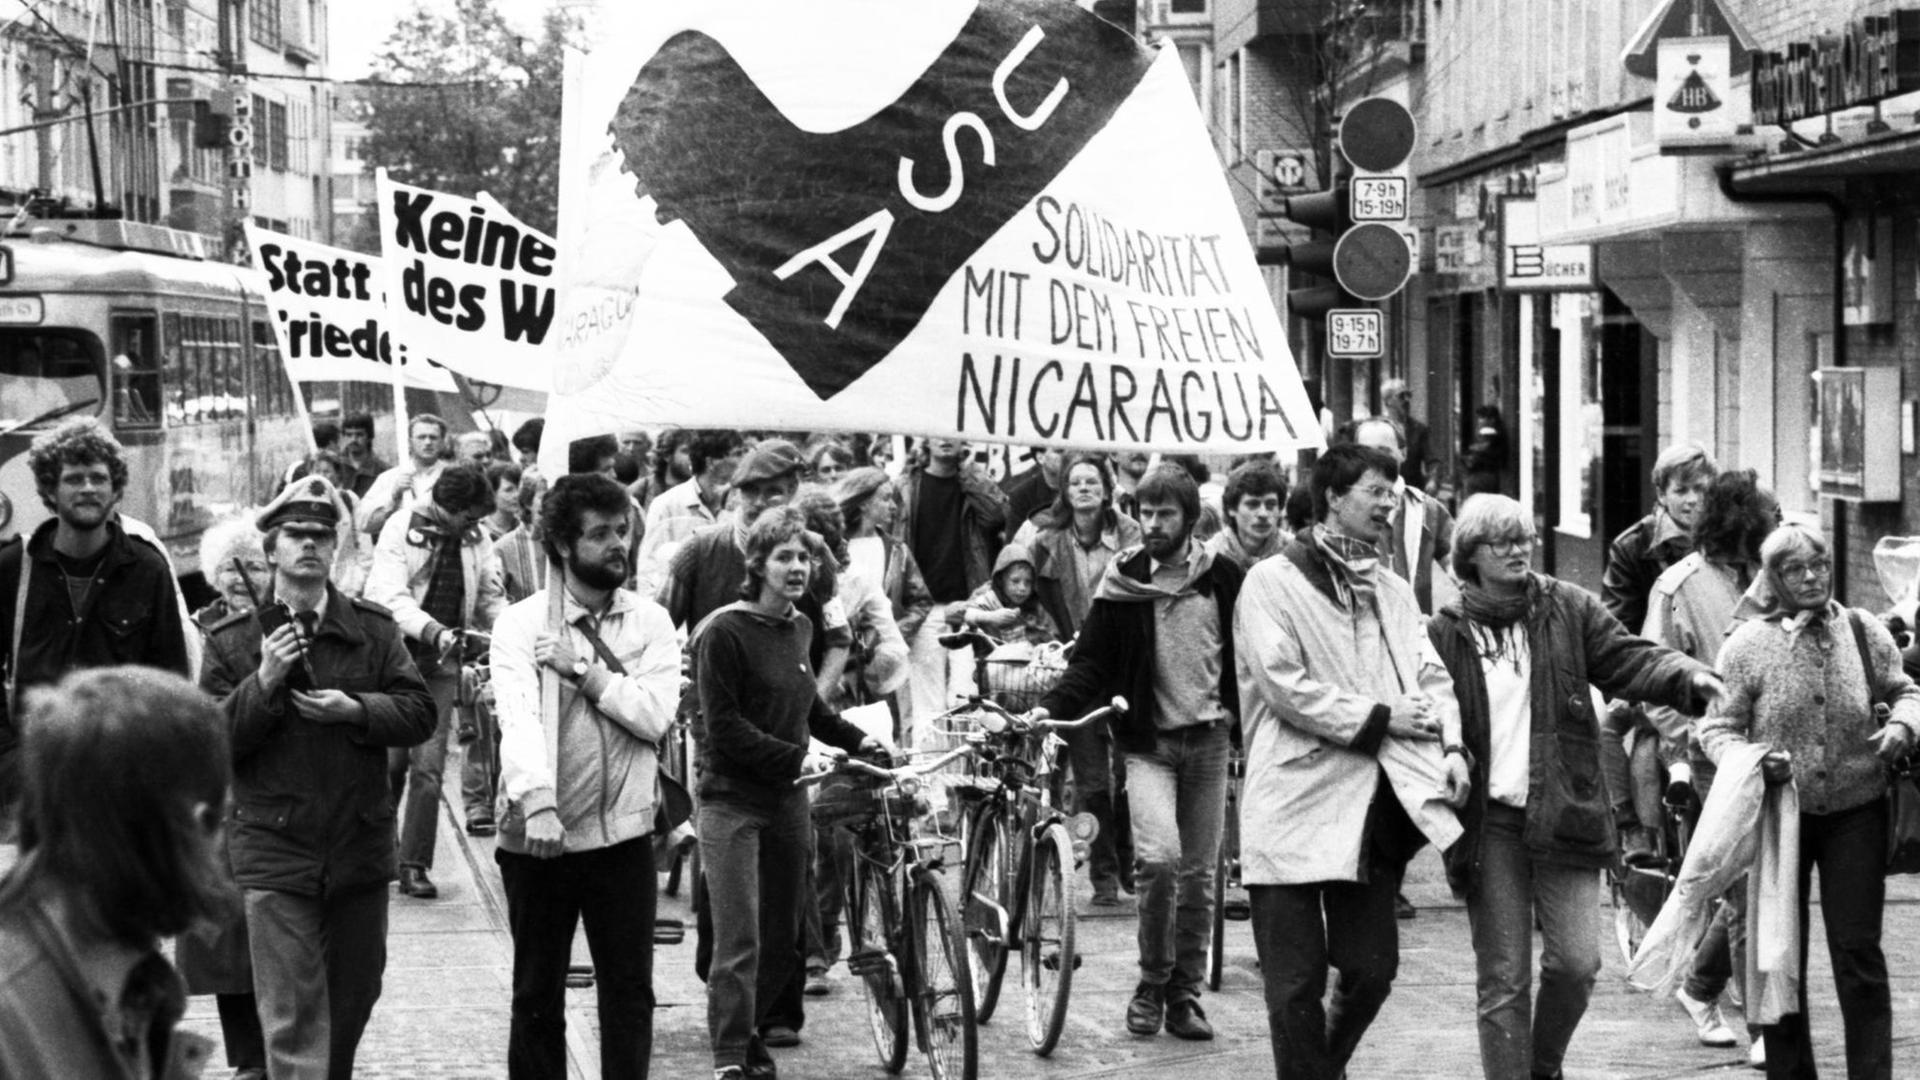 Anlaesslich des evangelischen Kirchentages demonstrierten Christen gegen Ruestung und Nato-Doppelbeschluss und für Solidarität mit Nicaragua. Foto: Klaus Rose